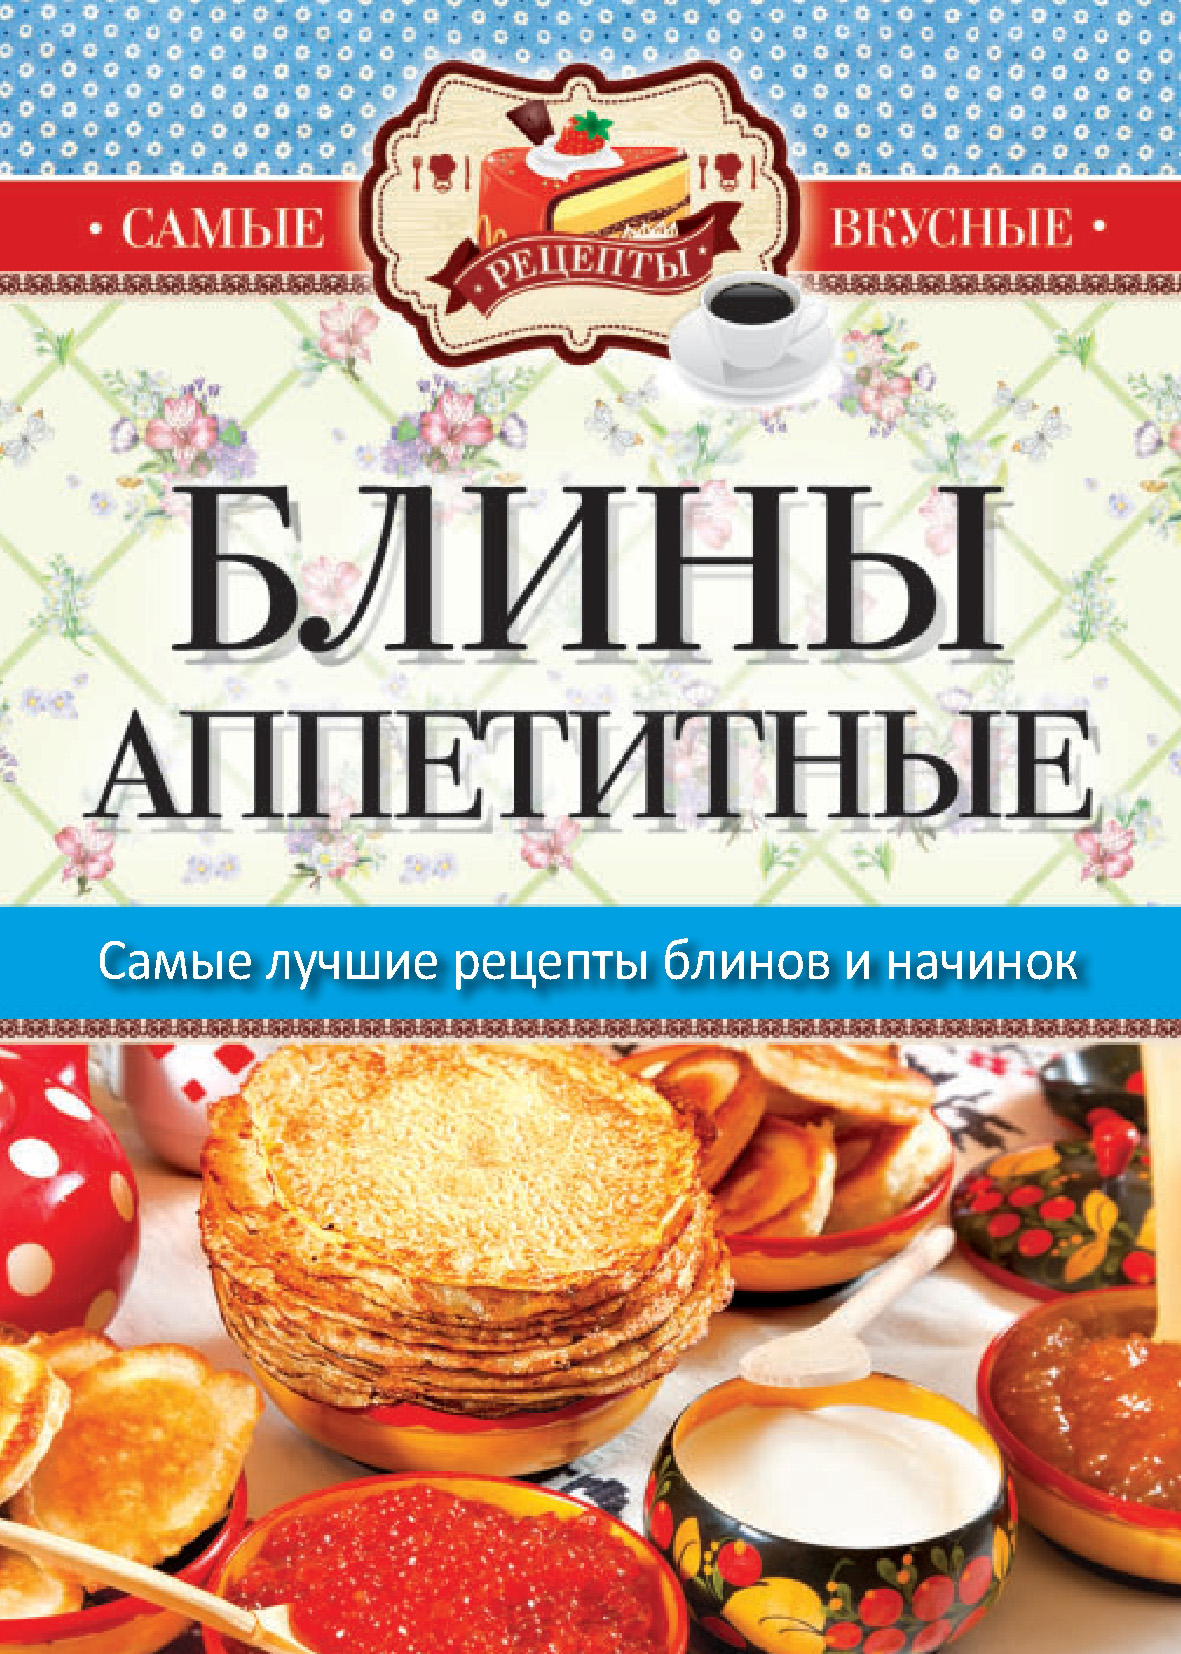 Книга Блины аппетитные из серии , созданная Сергей Кашин, может относится к жанру Кулинария. Стоимость электронной книги Блины аппетитные с идентификатором 10358820 составляет 75.00 руб.